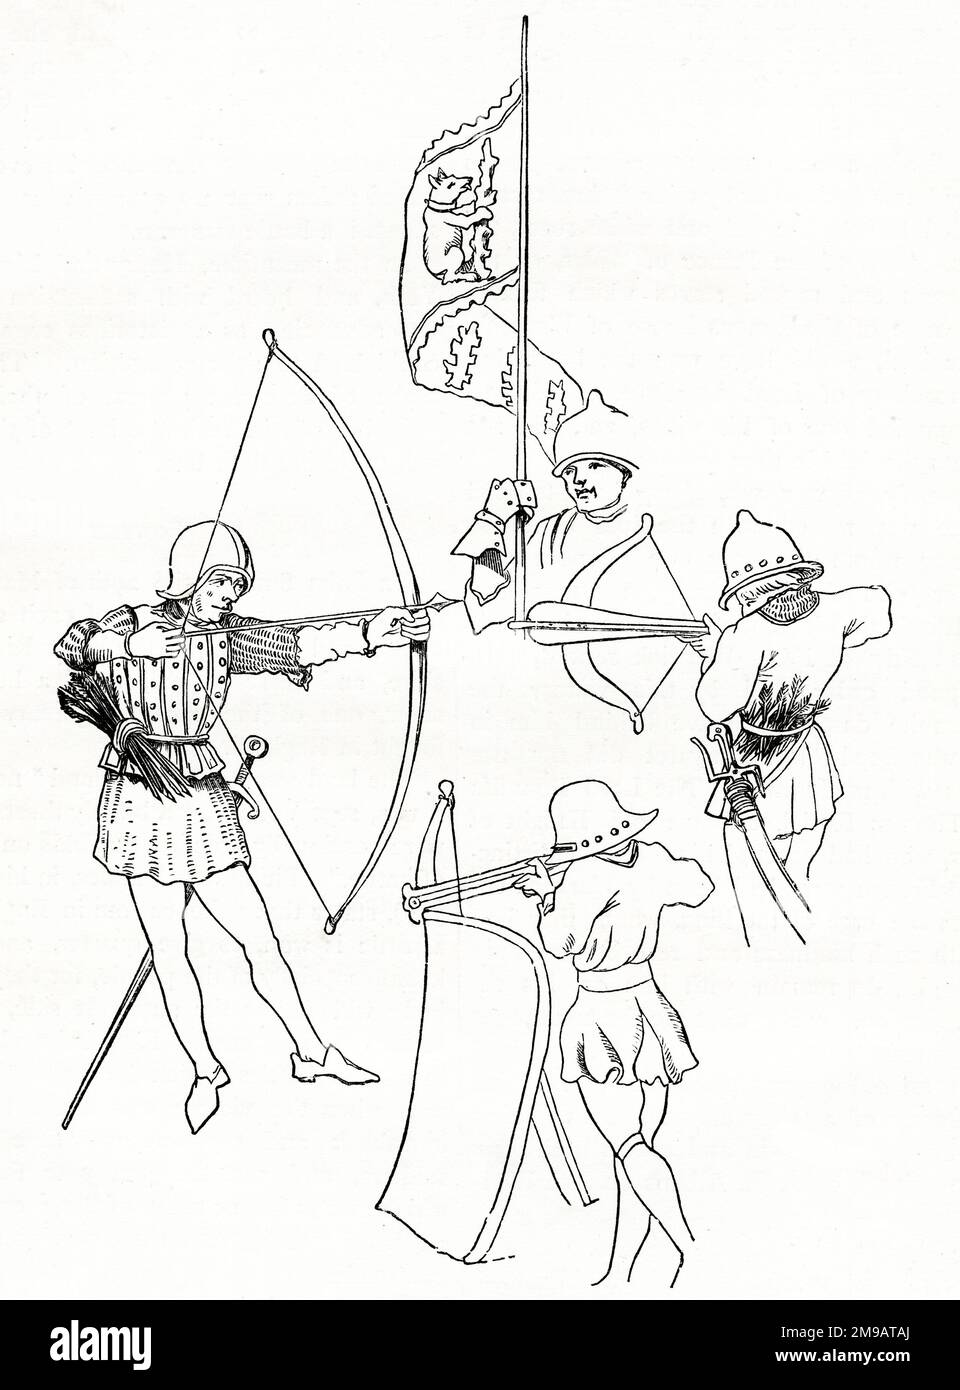 Armbrust-Mann (rechts), Pflaster (Mann schießt von hinter einem länglichen Schild oder Pflaster, unten), Bogenschütze mit Bogen und Pfeil (links) und der Standard von Richard, Earl of Warwick (oben), wie er während der Kriege der Rosen (1455-1487) eingesetzt wurde. Stockfoto